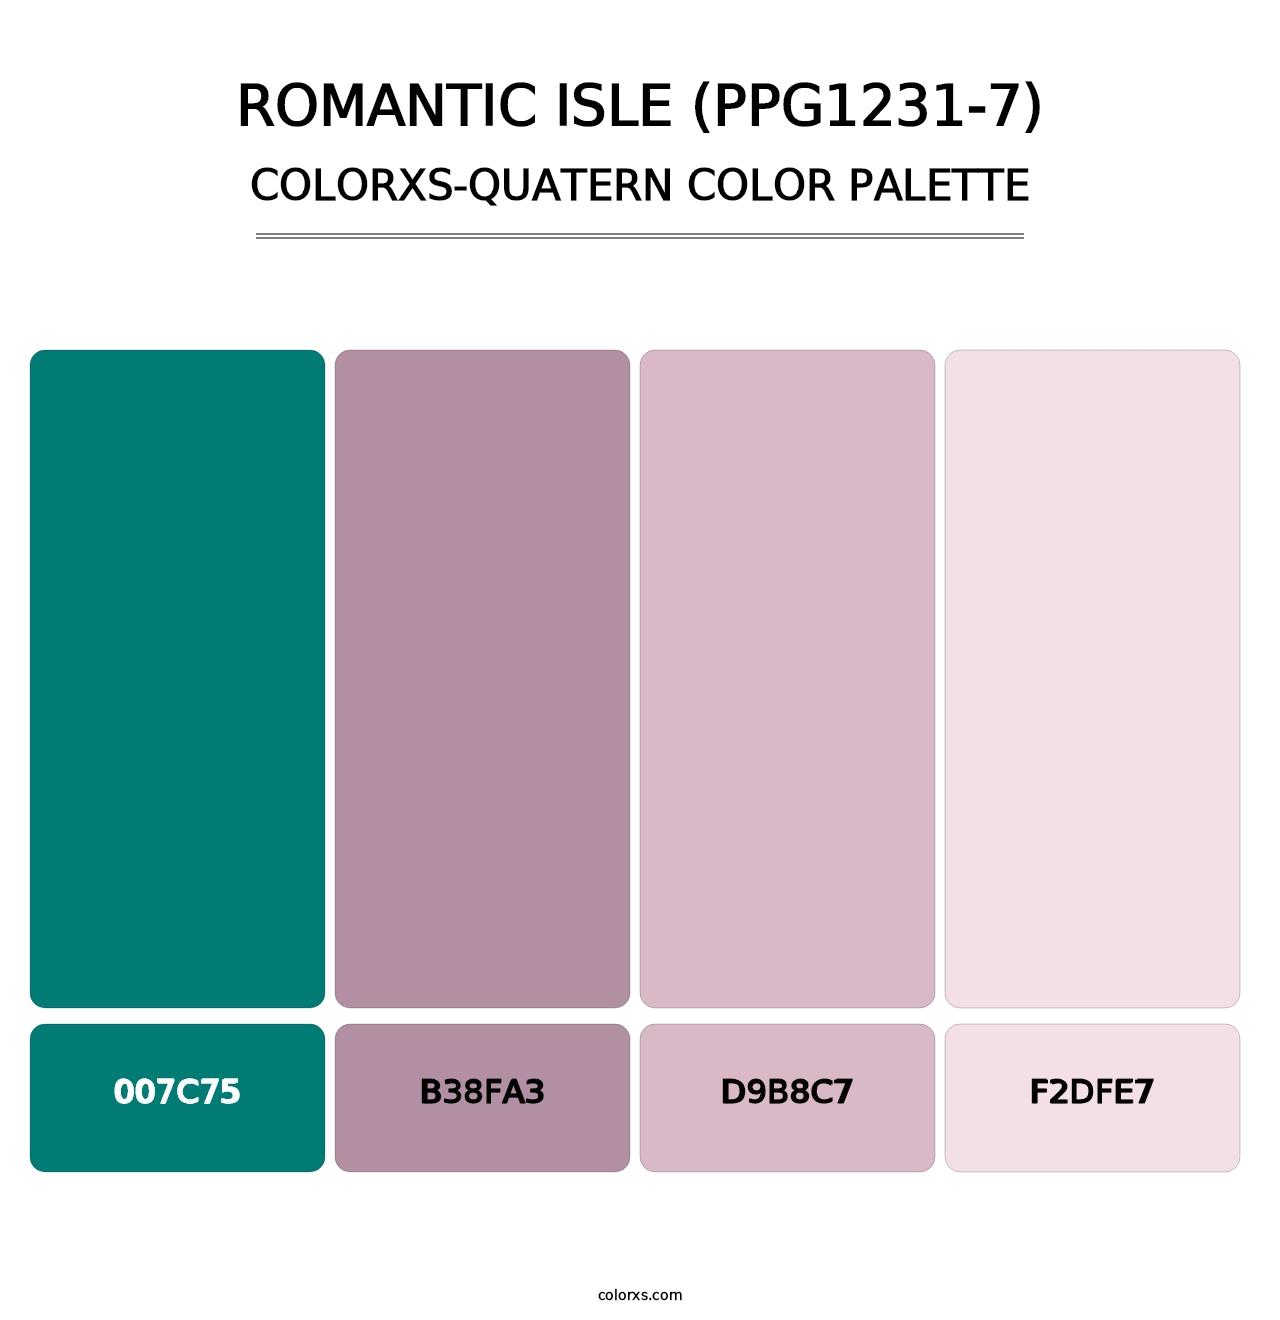 Romantic Isle (PPG1231-7) - Colorxs Quatern Palette